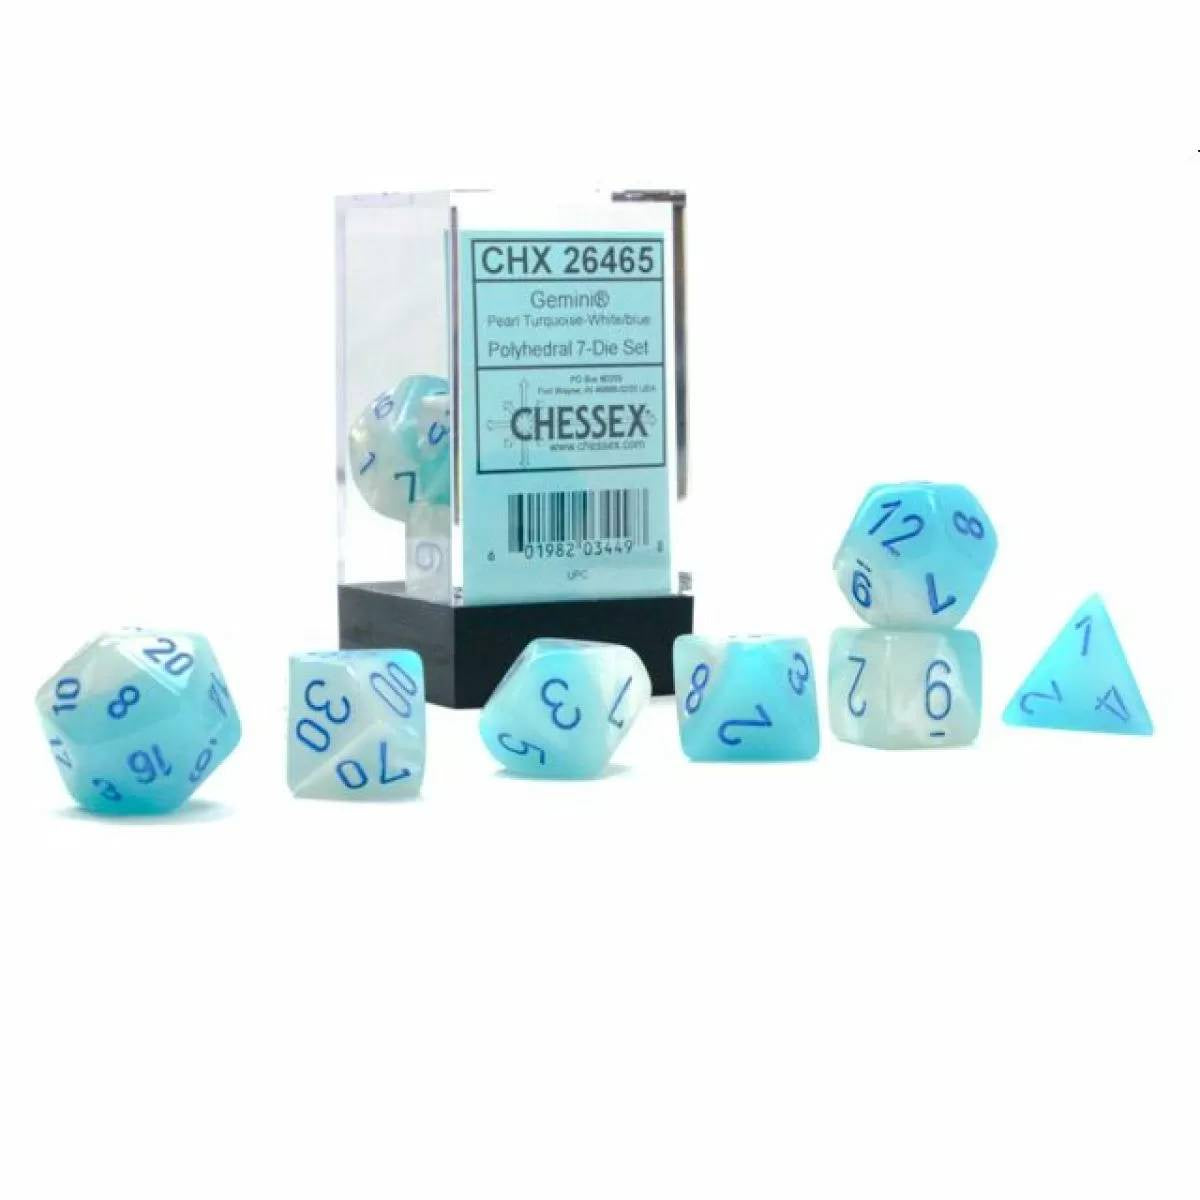 Chessex - Gemini Pearl Turquoise-White/blue Luminary 7-Die Set (CHX 26465)